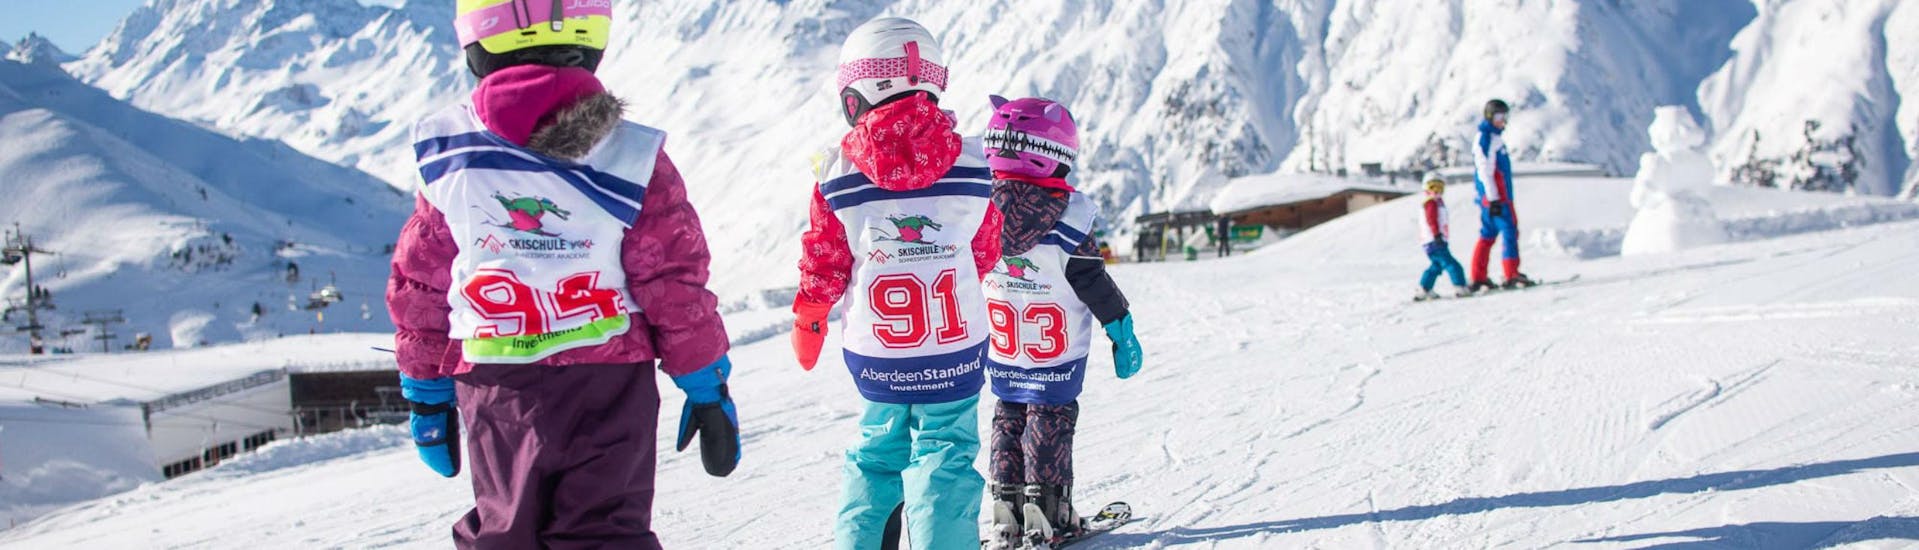 Drei junge Kinder beim Skifahren auf einer flachen Piste im Rahmen des Angebots Kinder Skikurs (6-15 Jahre) - Anfänger im Skigebiet Ischgl.